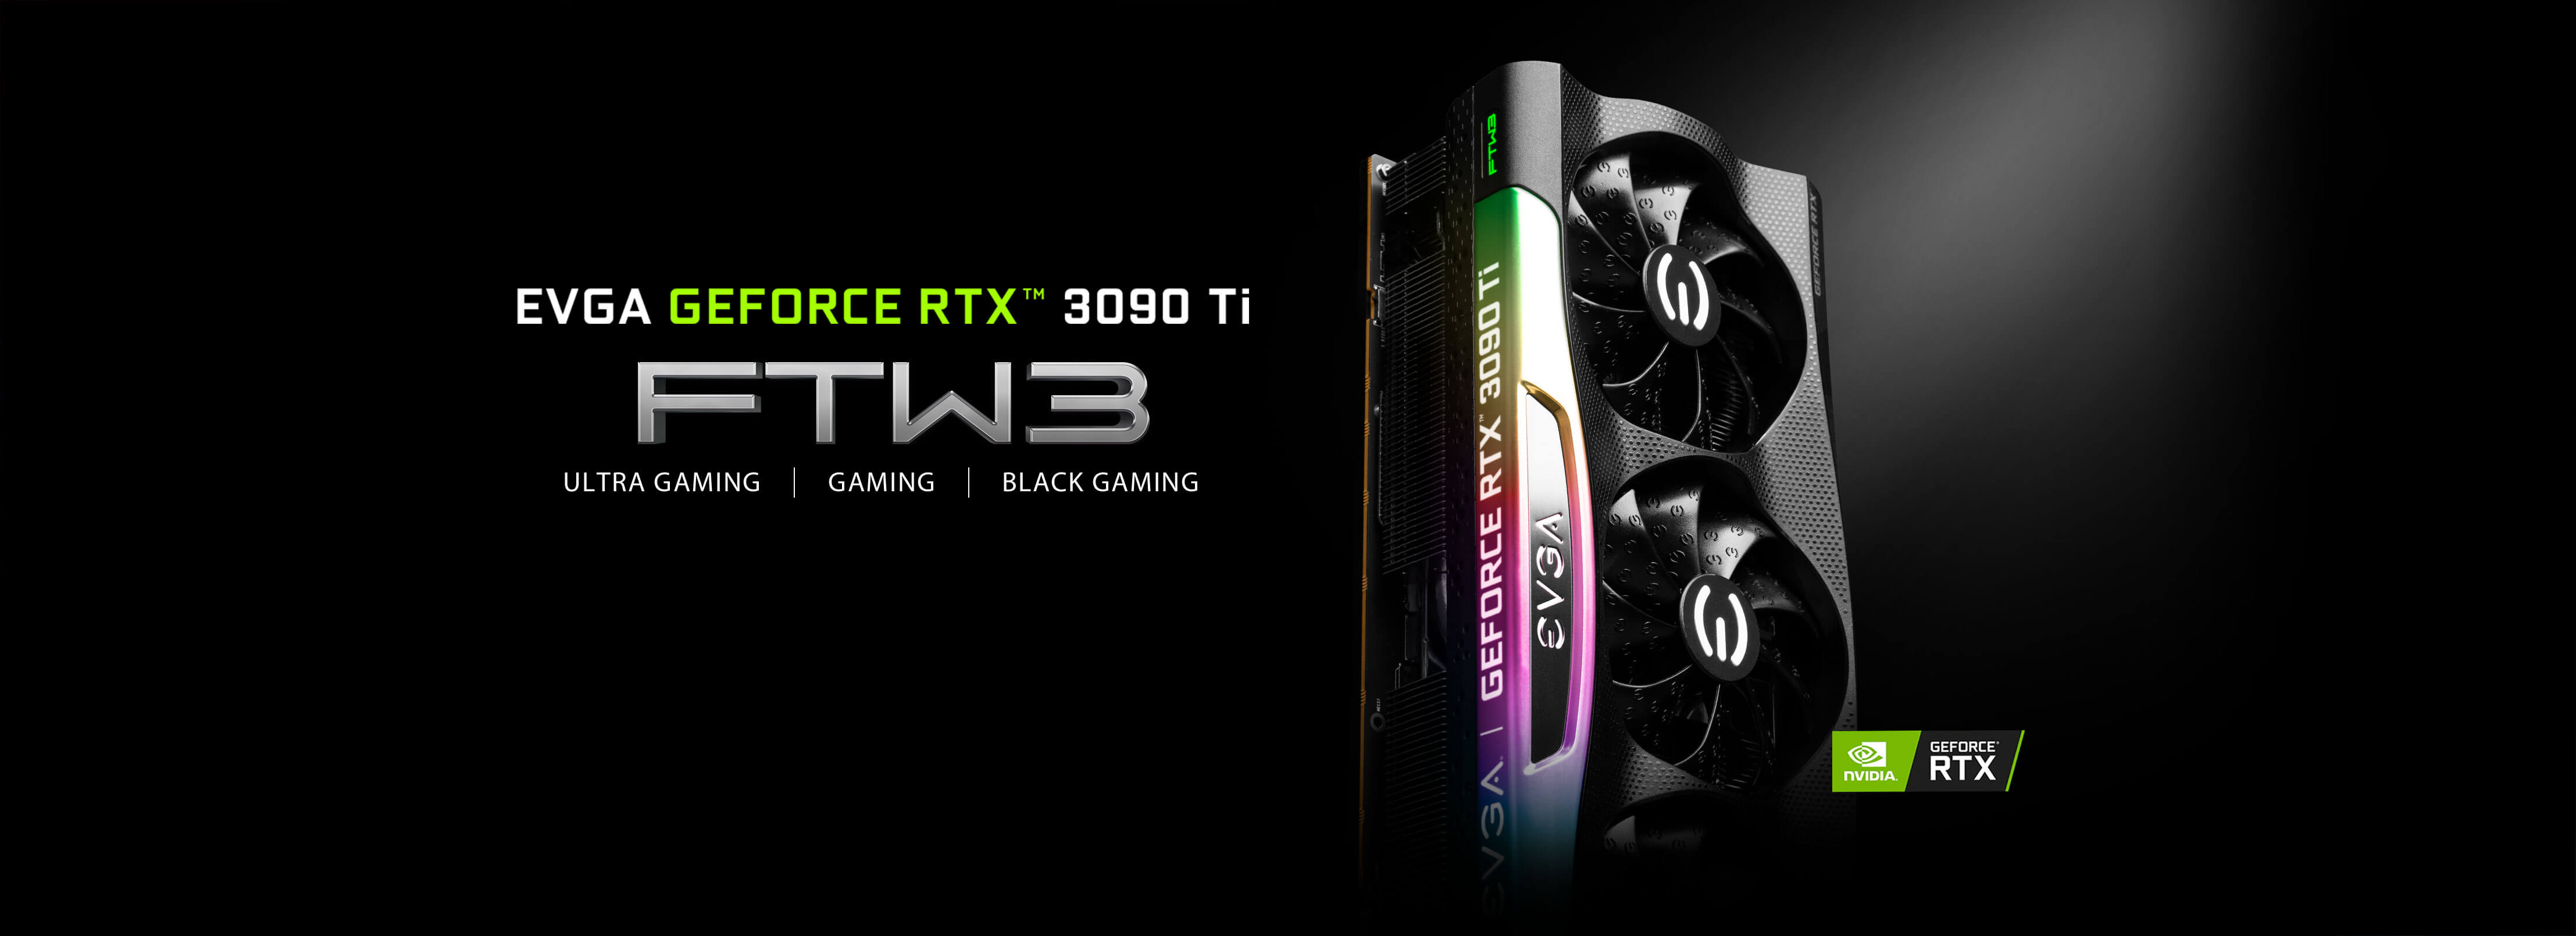 EVGA GeForce RTX™ 3090 Ti